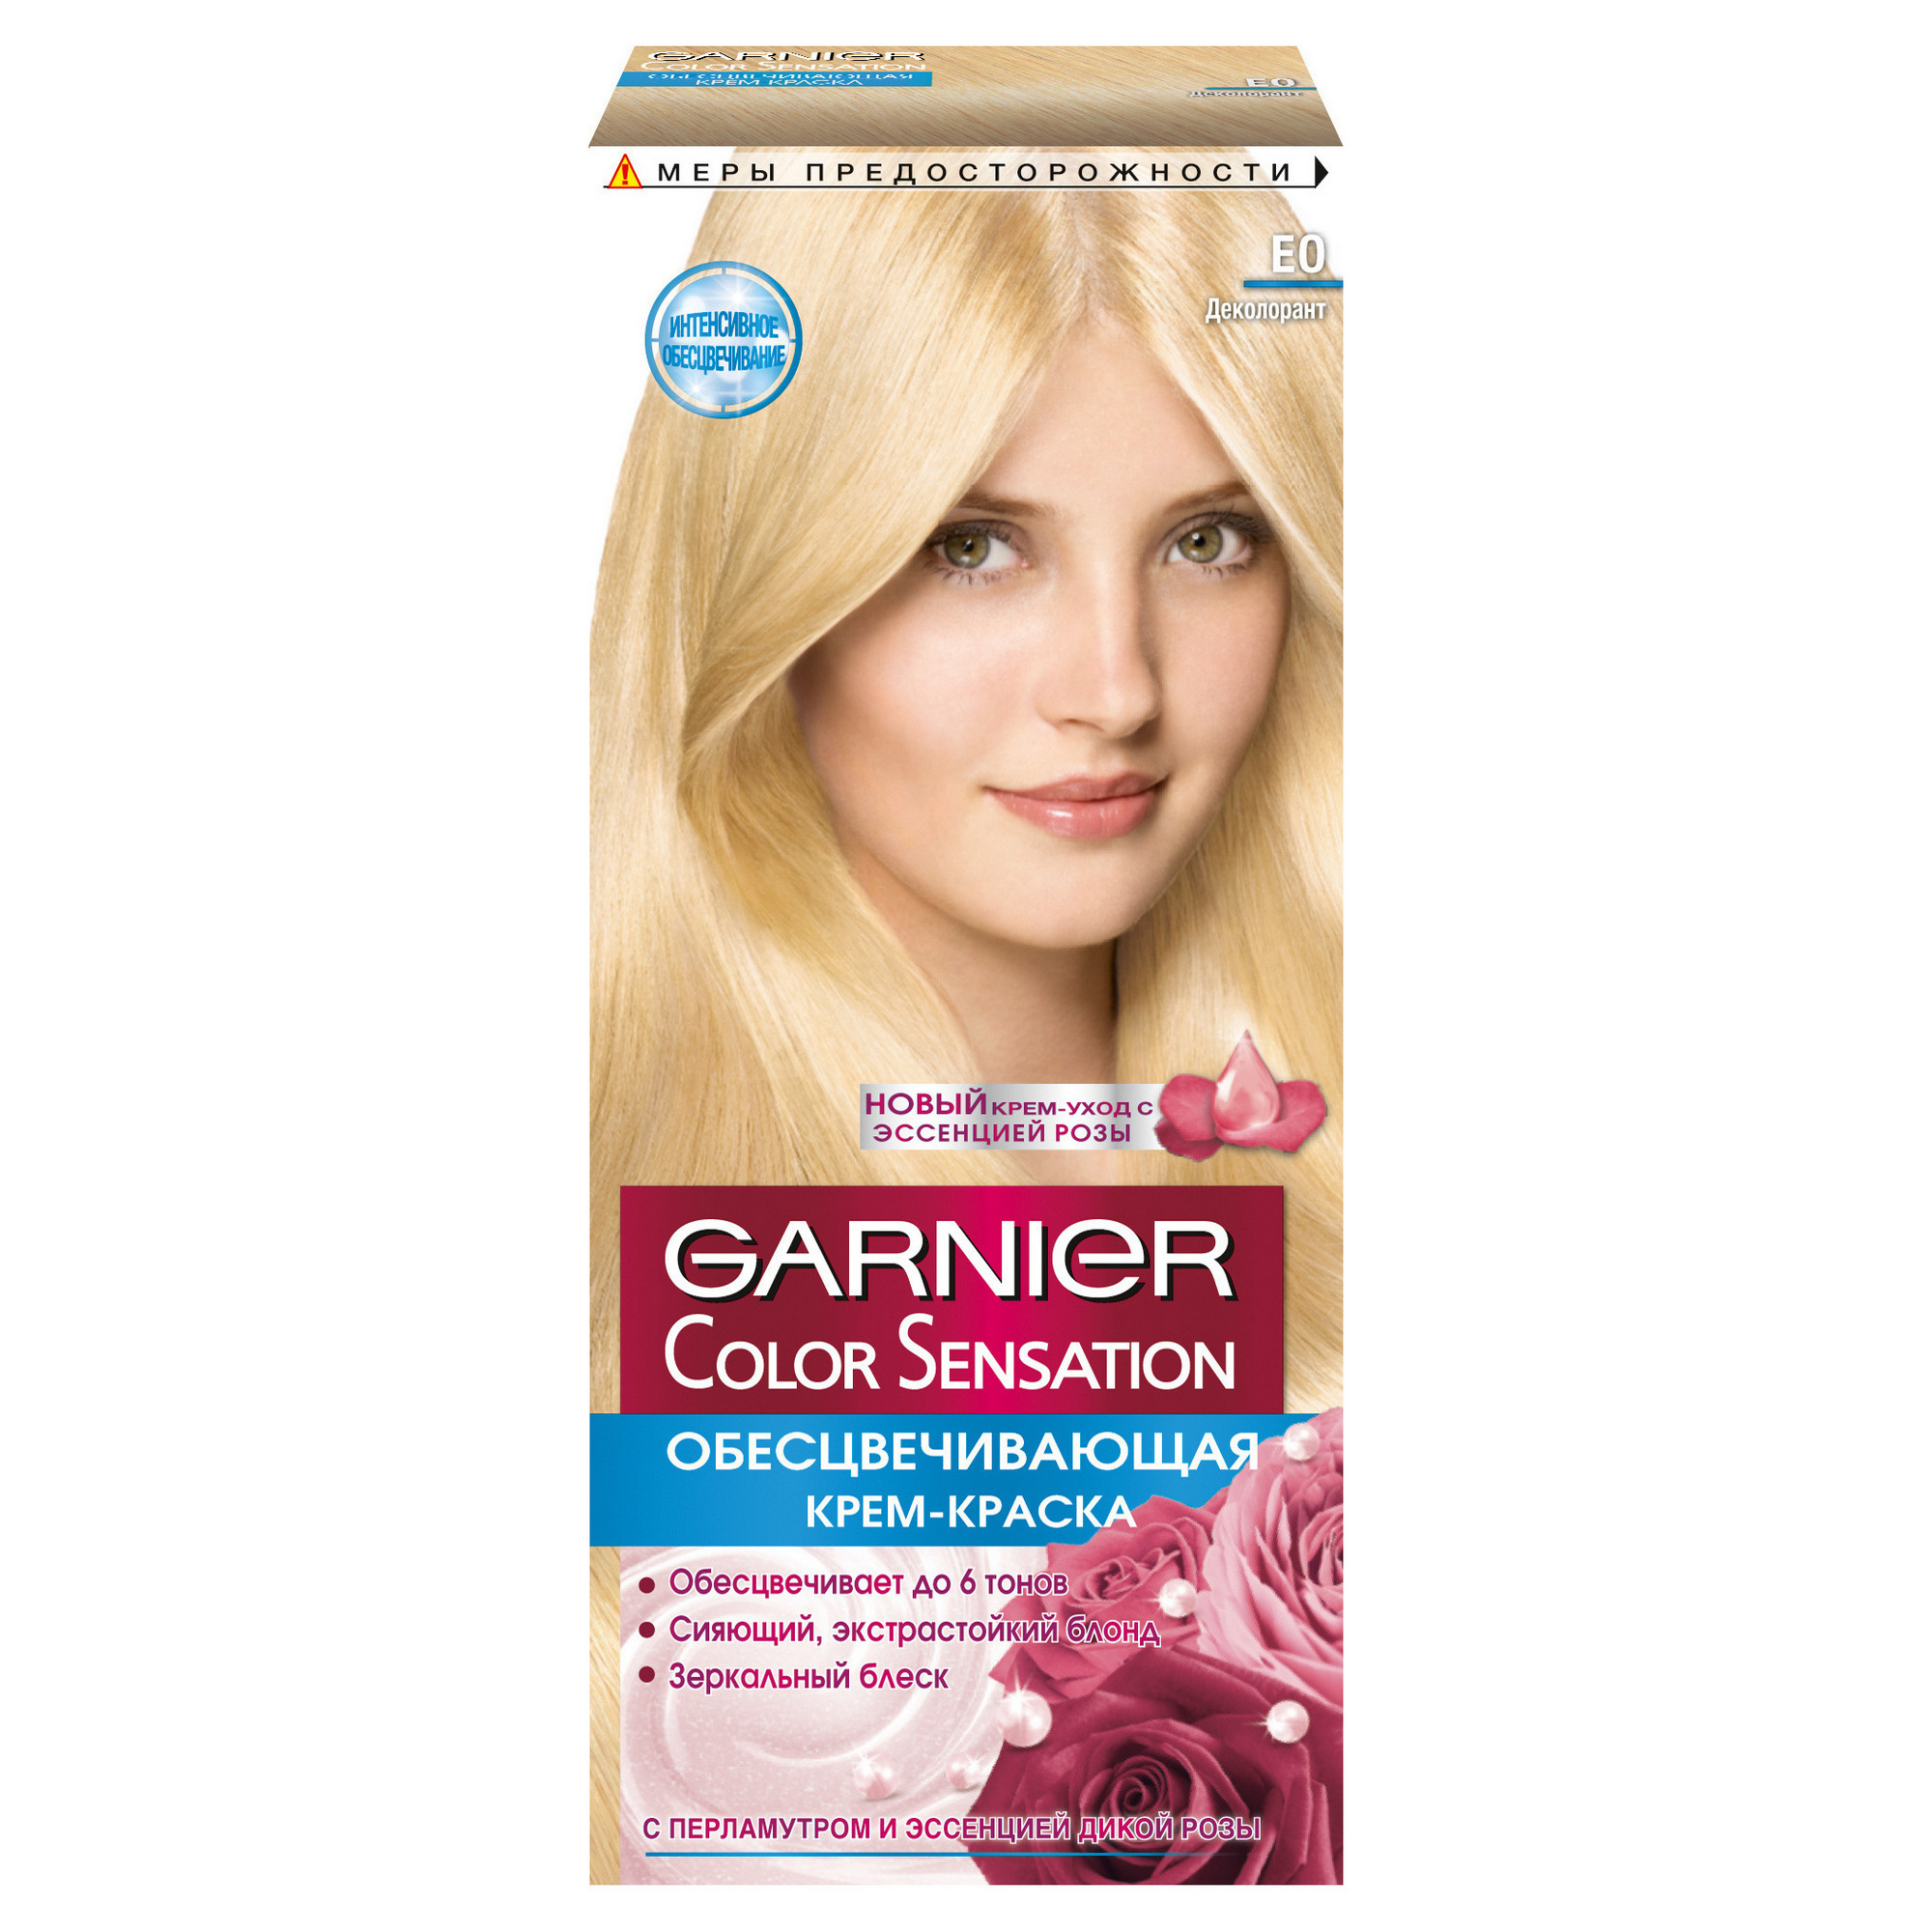 фото Краска для волос garnier color sensation, тон №e0 ультра блонд